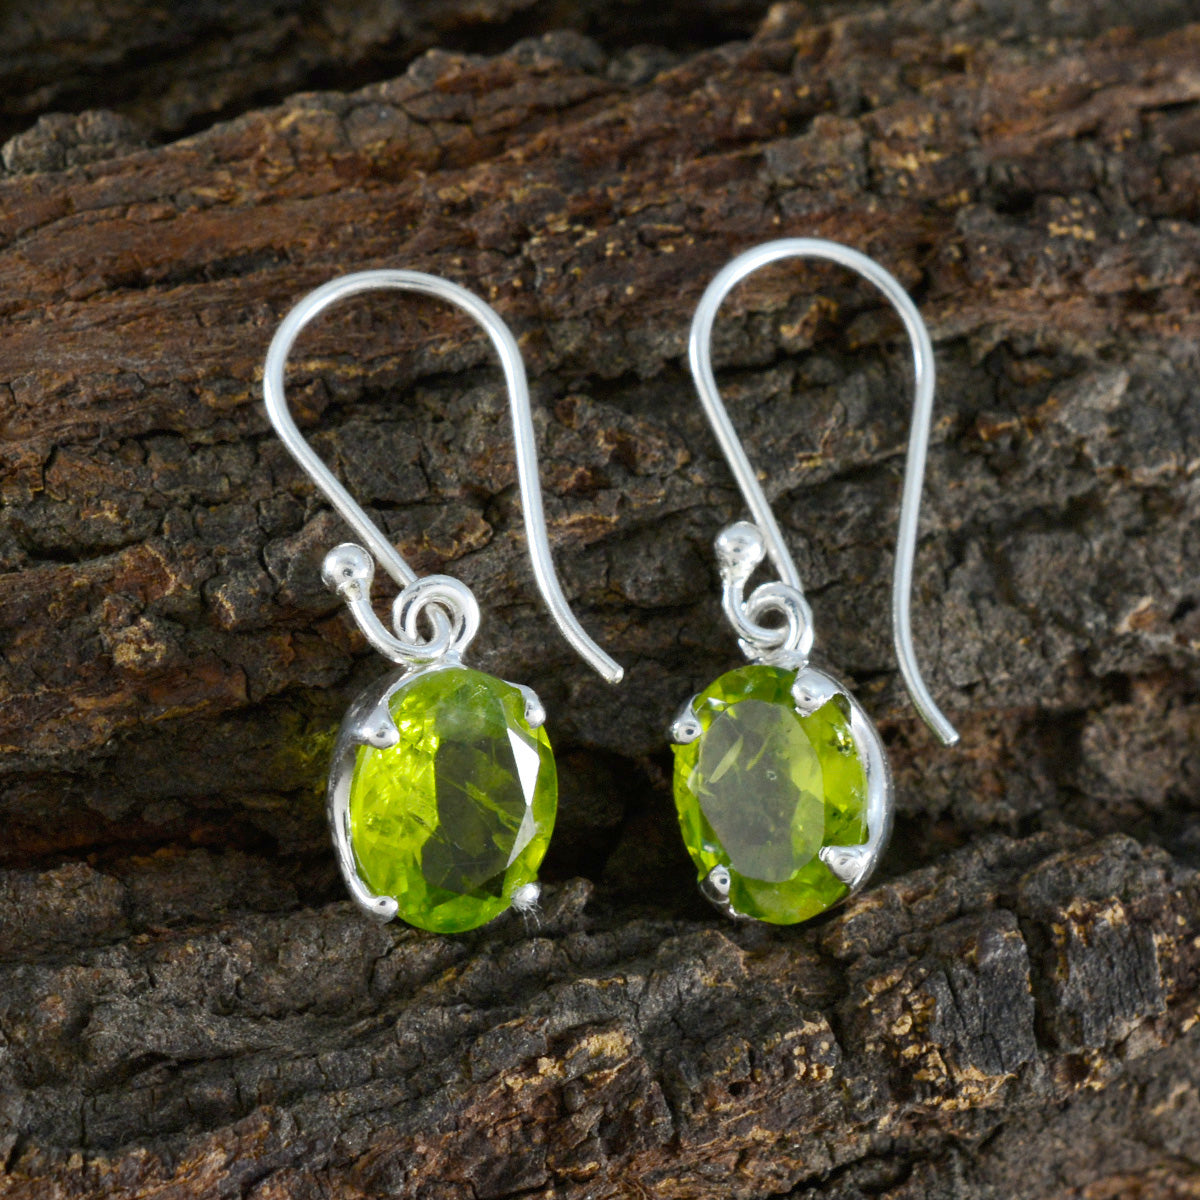 Riyo Fanciable 925 Sterling Silver Earring For Wife Peridot Earring Bezel Setting Green Earring Dangle Earring